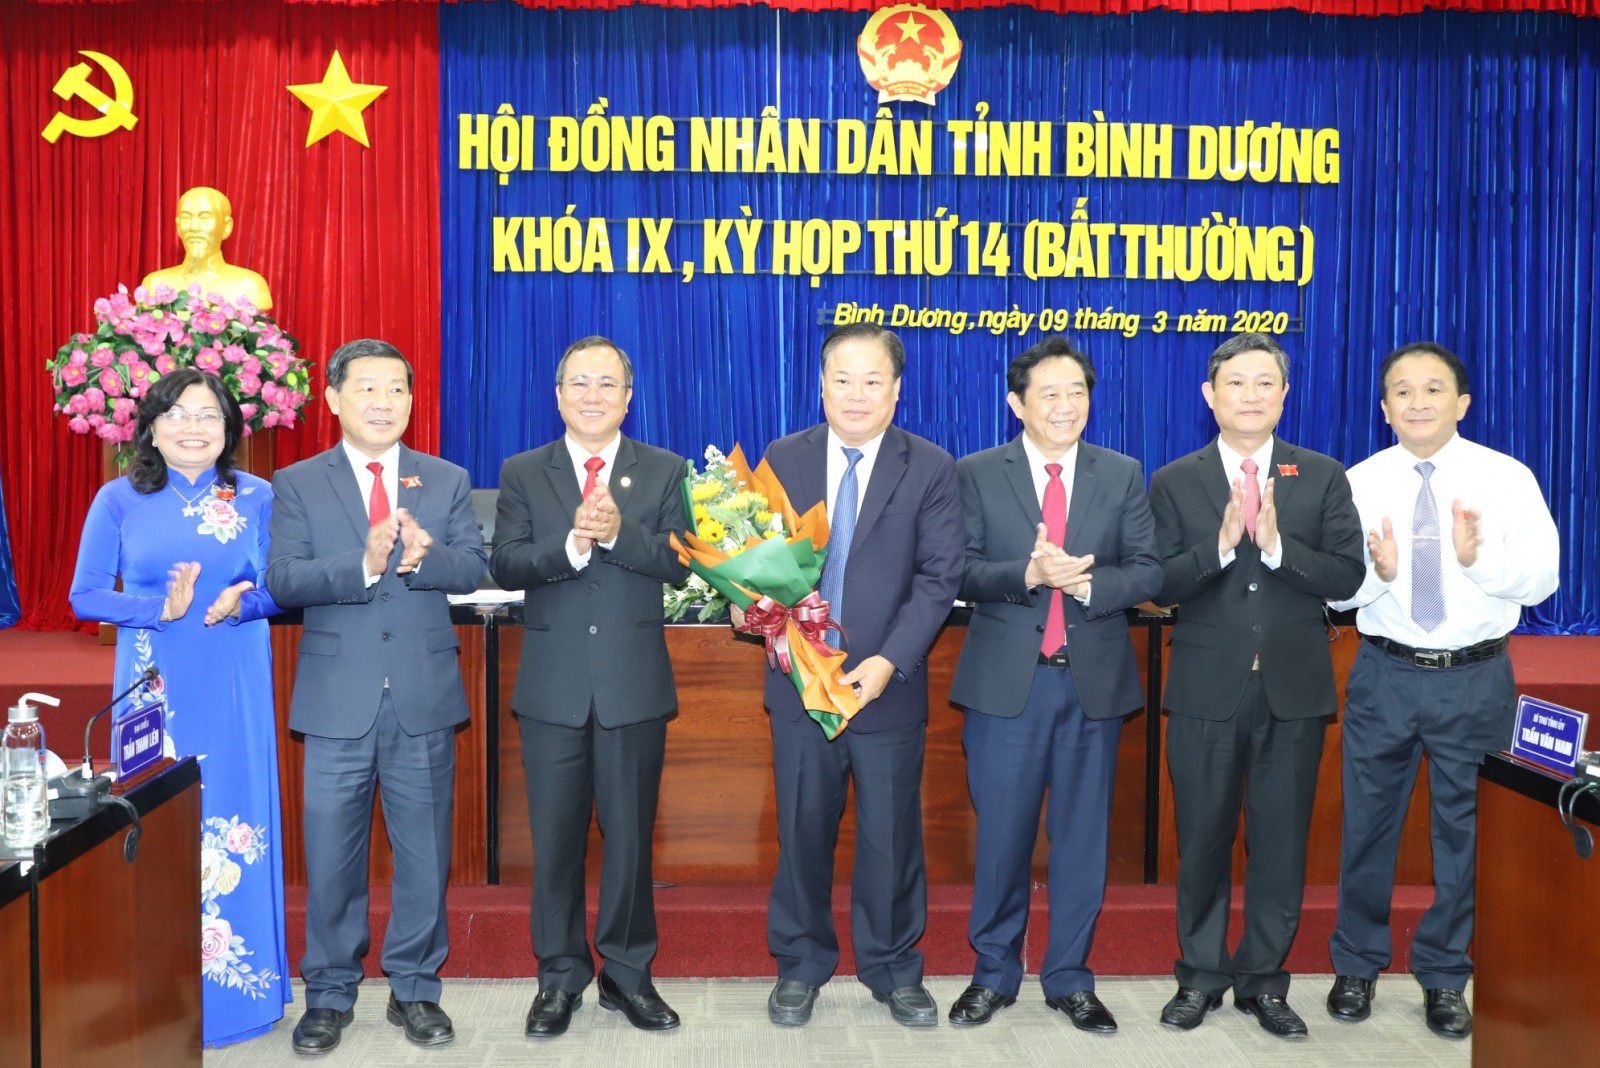 Ban Bí thư Trung ương Đảng chuẩn y nhân sự mới tại Quảng Ninh, Bình Dương, Đăk Nông - Ảnh 2.